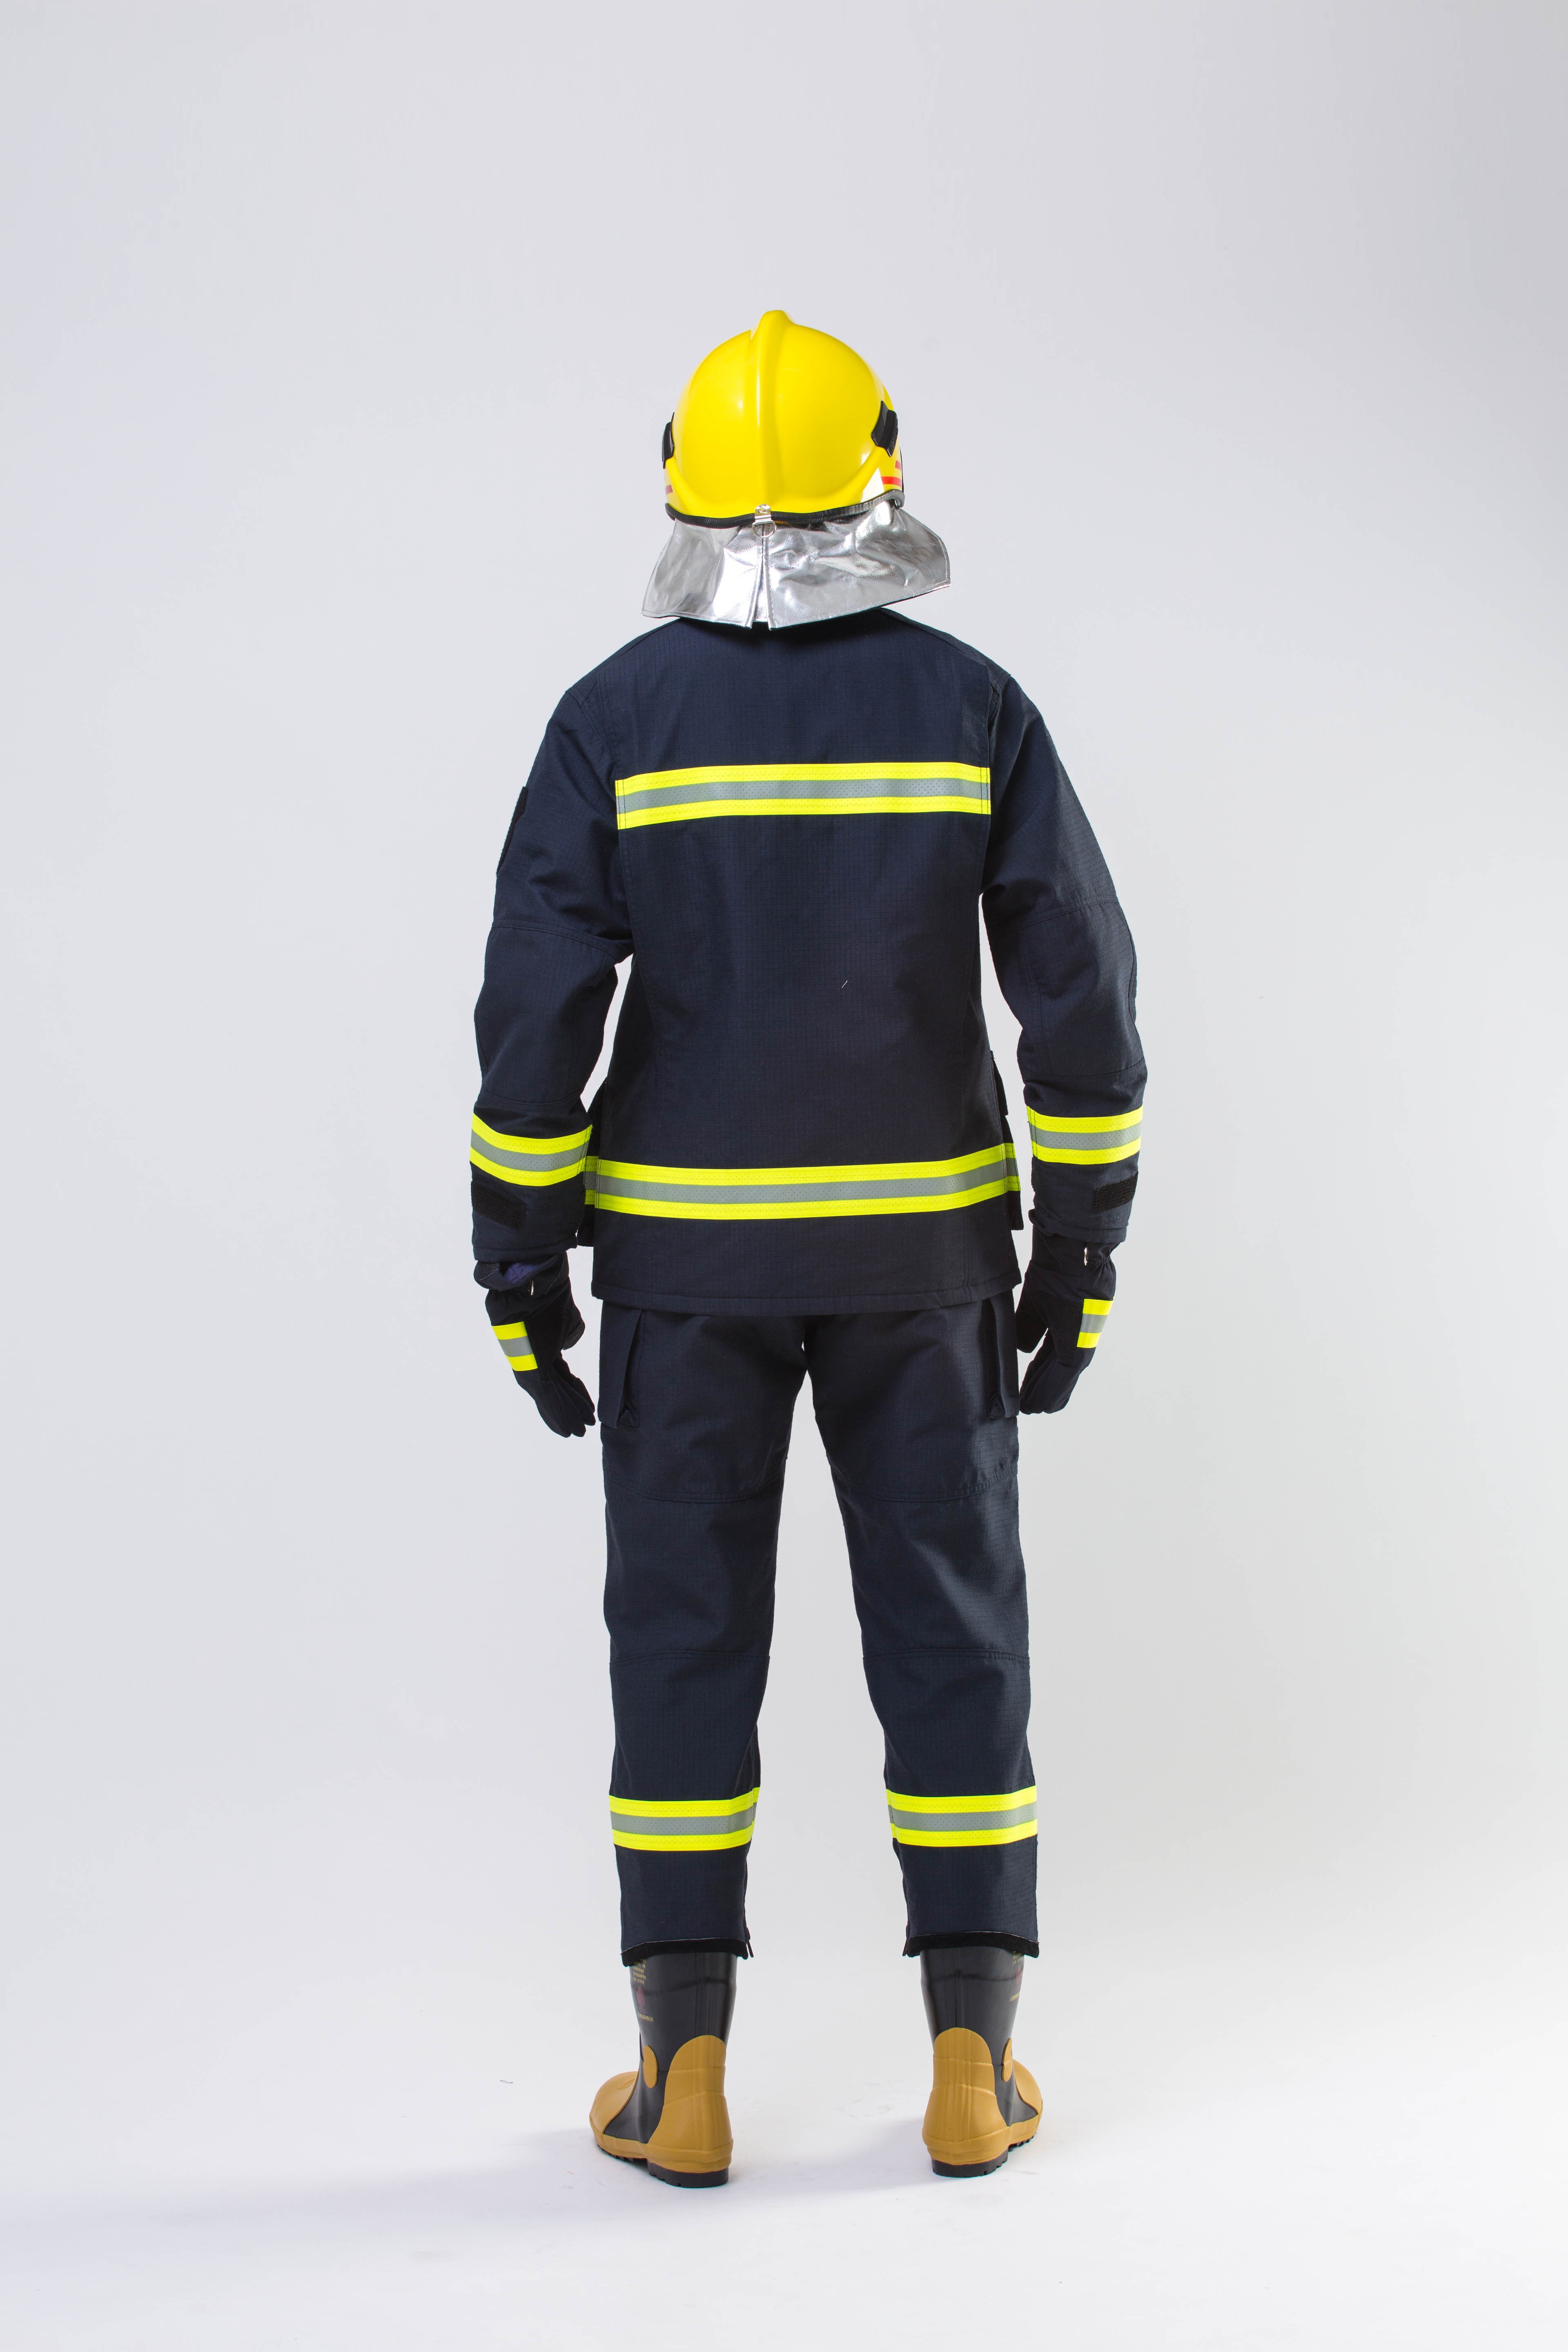  Aramid IIIA Firefighting clothing fireman suit with 4 layers